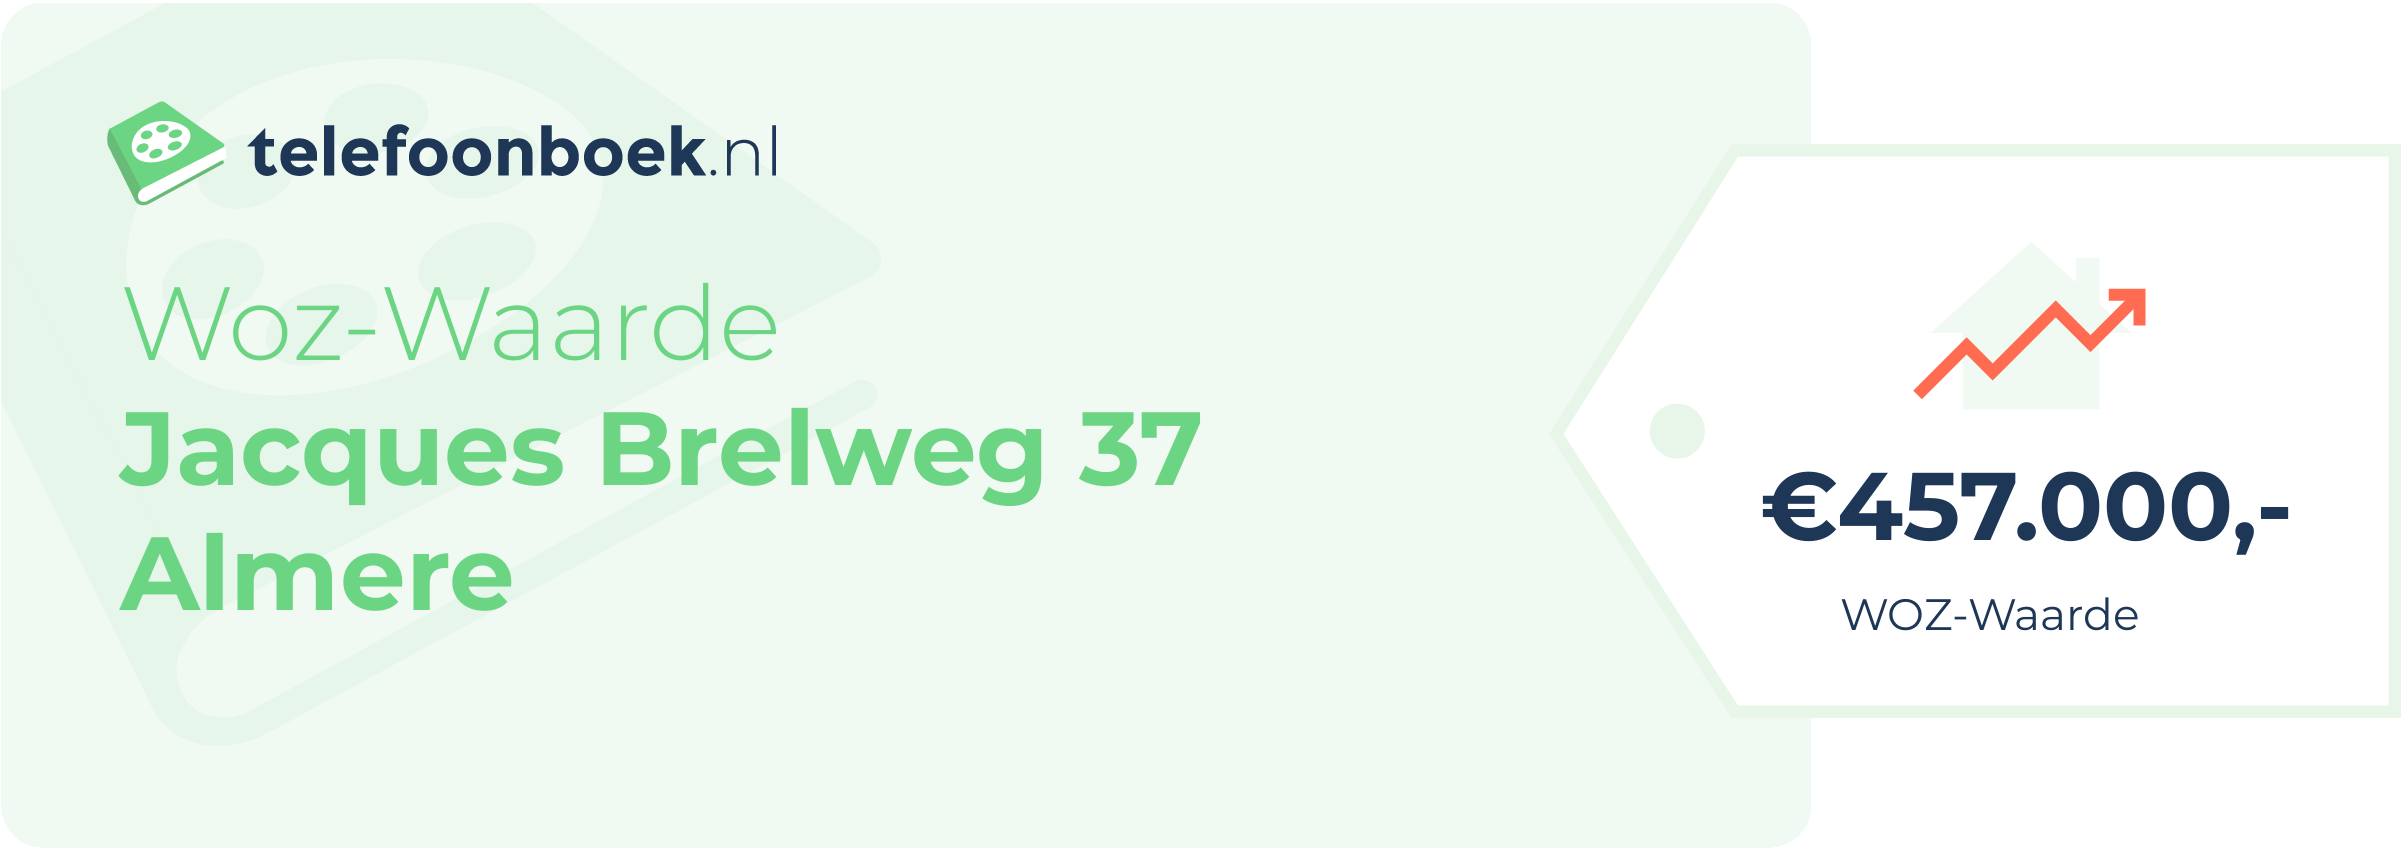 WOZ-waarde Jacques Brelweg 37 Almere